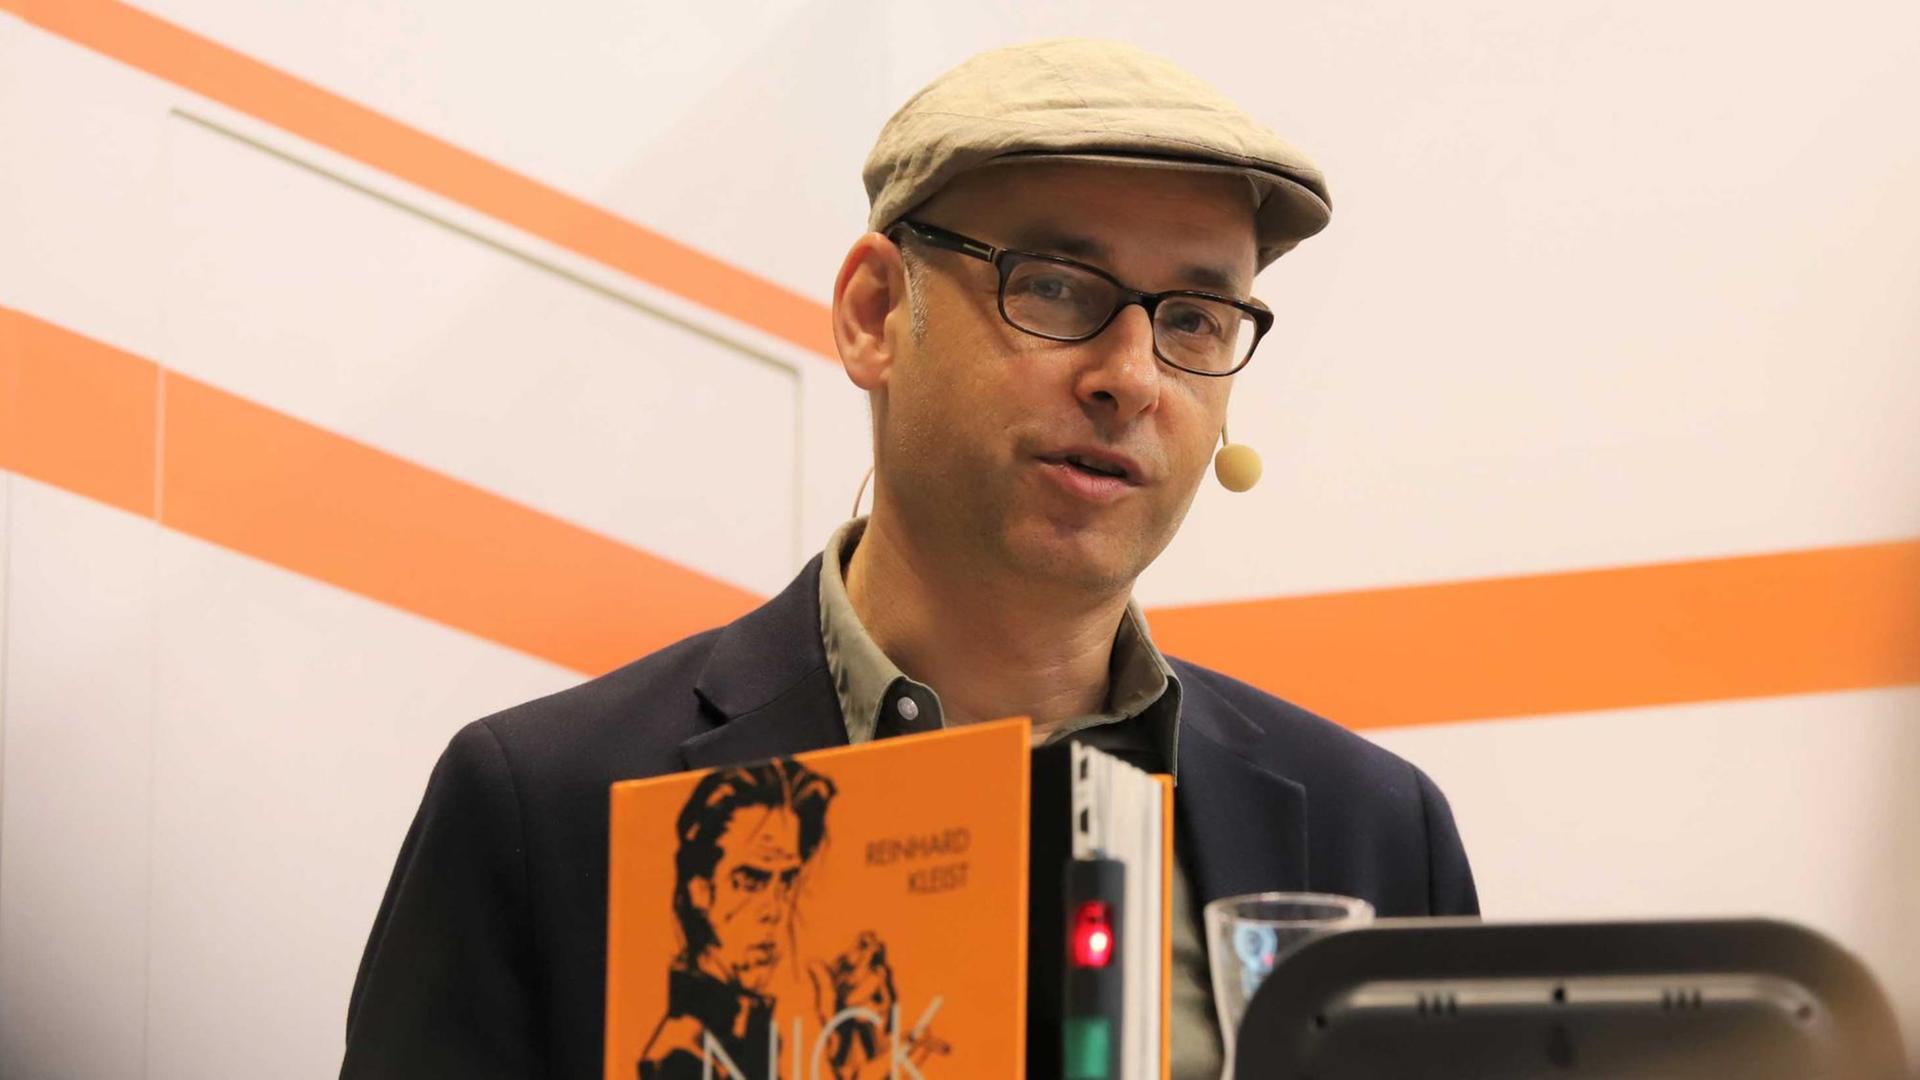 Frankfurter Buchmesse 2017: Der Comic-Zeichner Reinhard Kleist sorucgt über sein Buch "Nick Cave" (Carlsen Verlag).